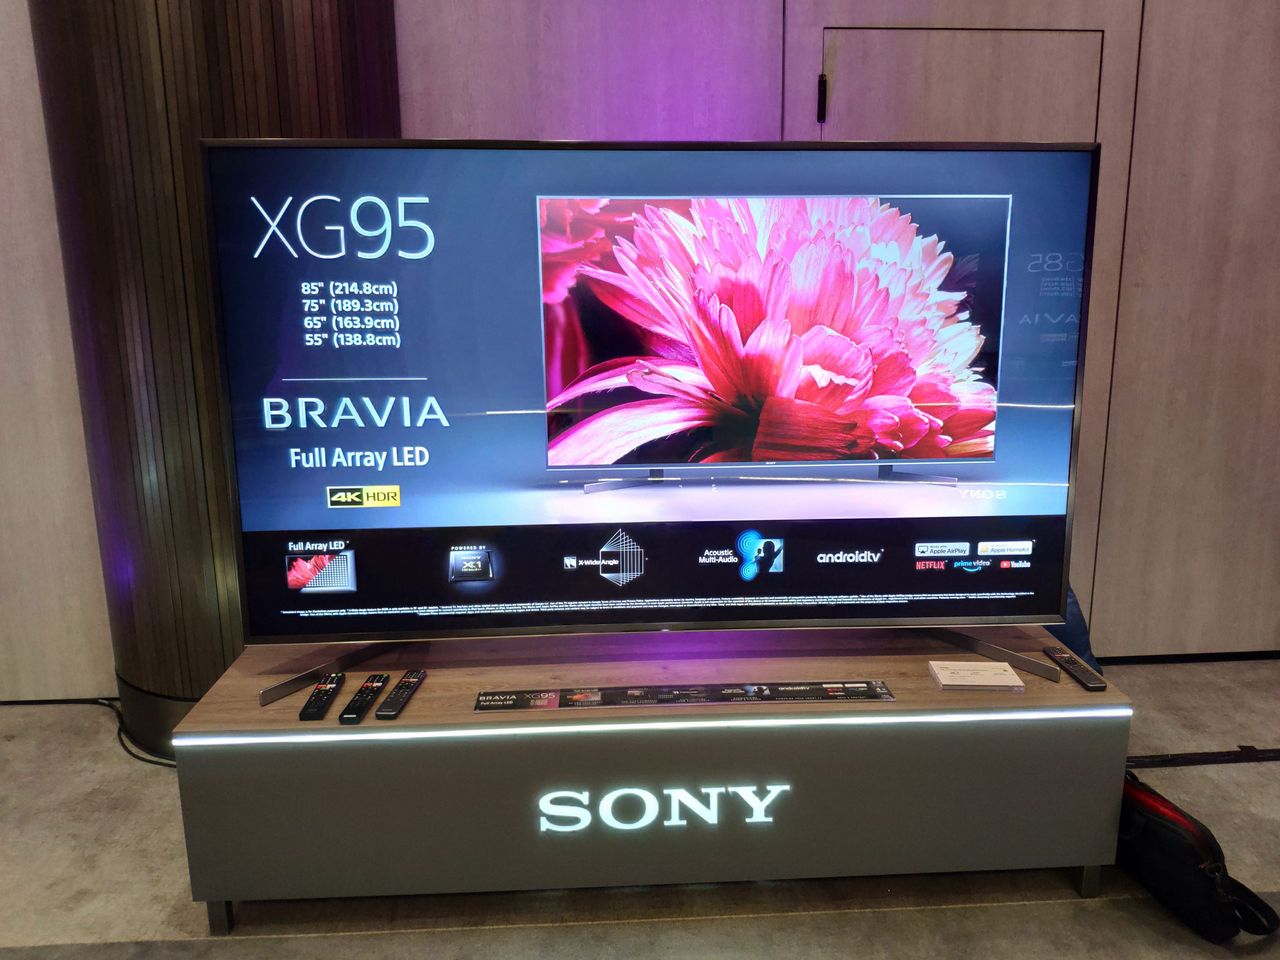 Sony lada moment rozpocznie sprzedaż nowych telewizorów Full Array LED 4K HDR z serii XG95